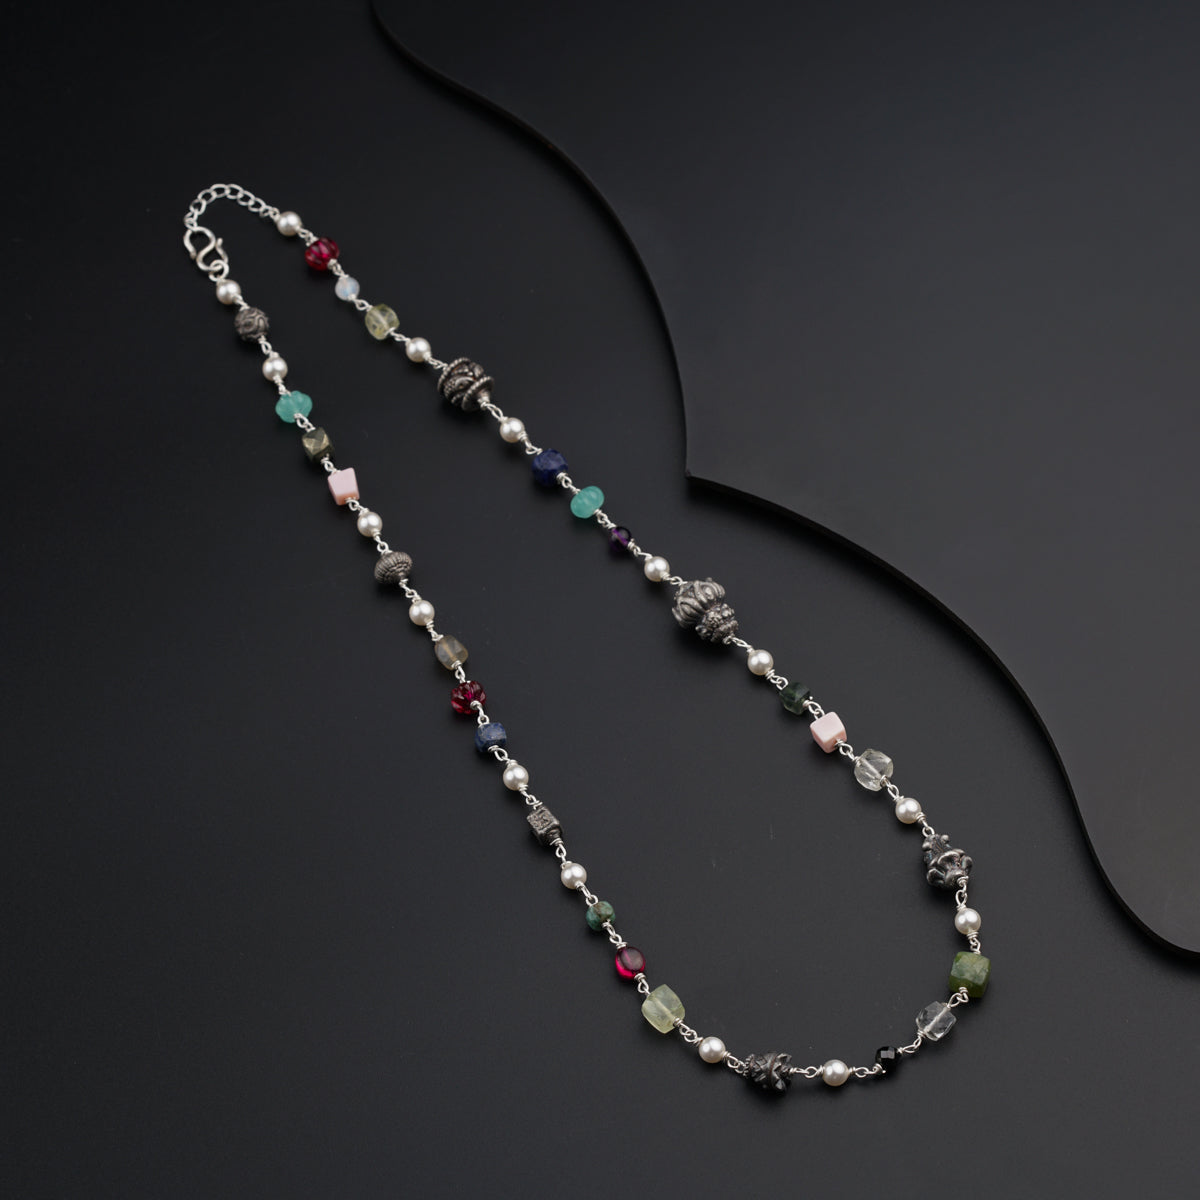 Semi Precious Multicolor Stones and Silver Beads Necklace / Chain